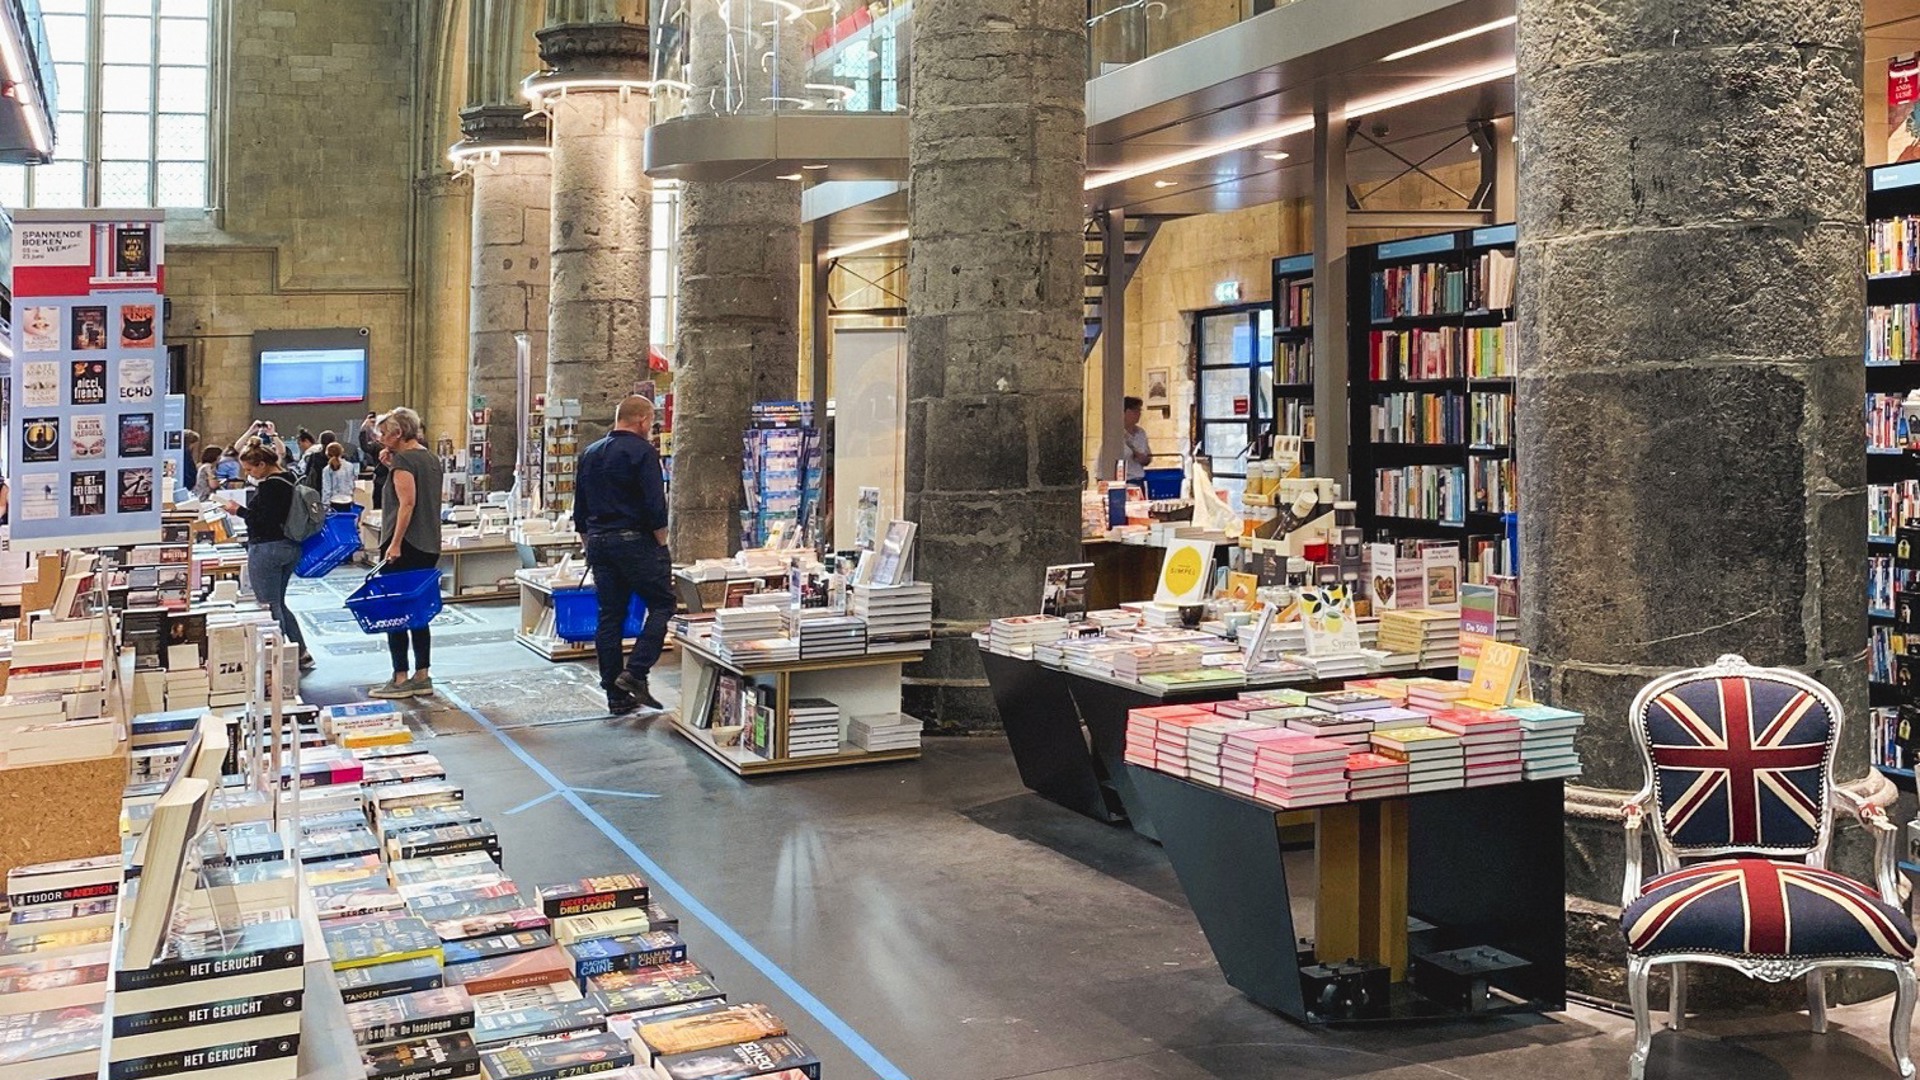 Must-visit bookshop in Maastricht